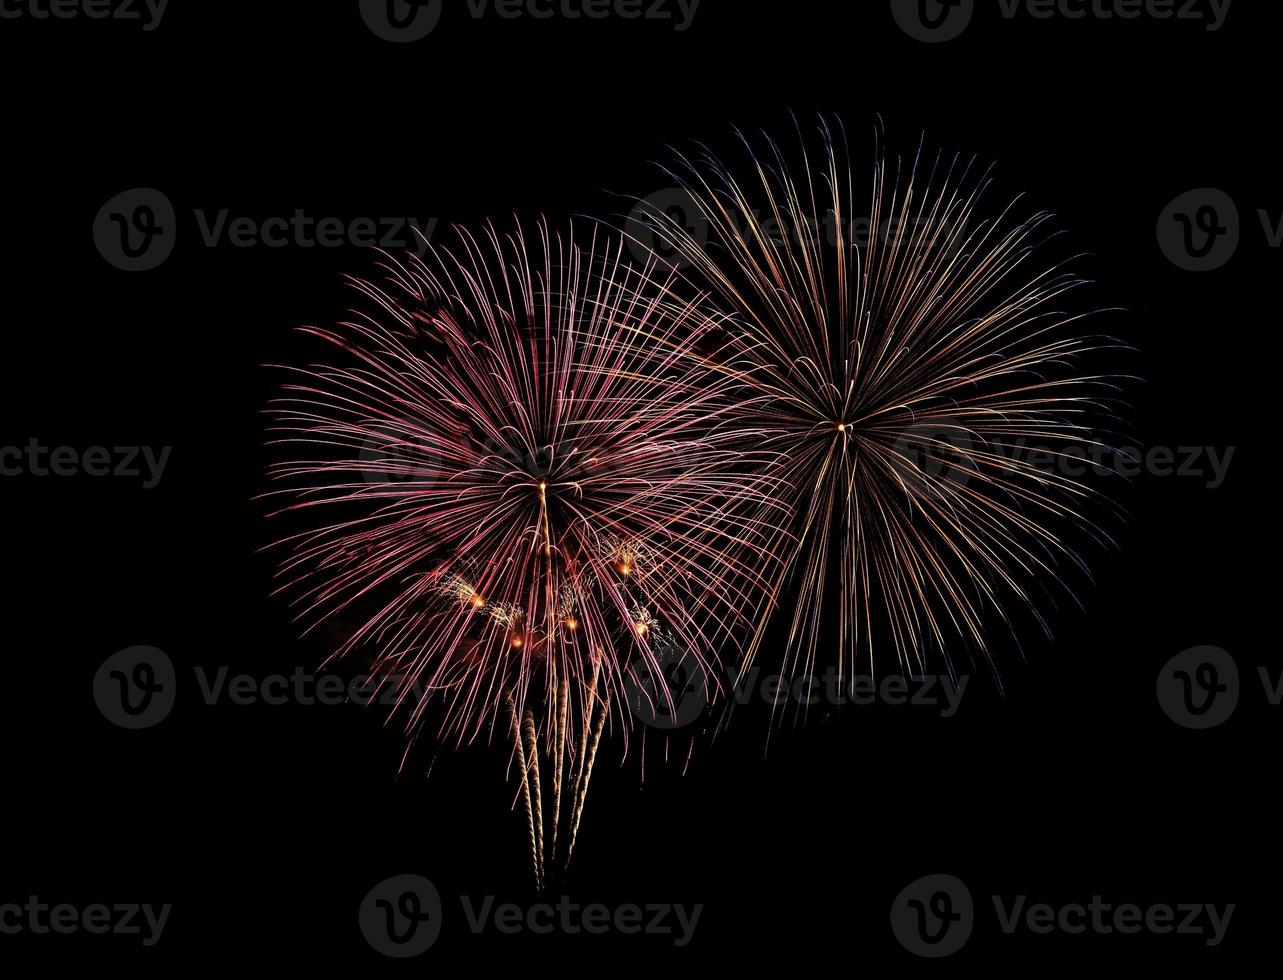 abstracte feestelijke kleurrijke vuurwerkexplosie op zwarte achtergrond foto